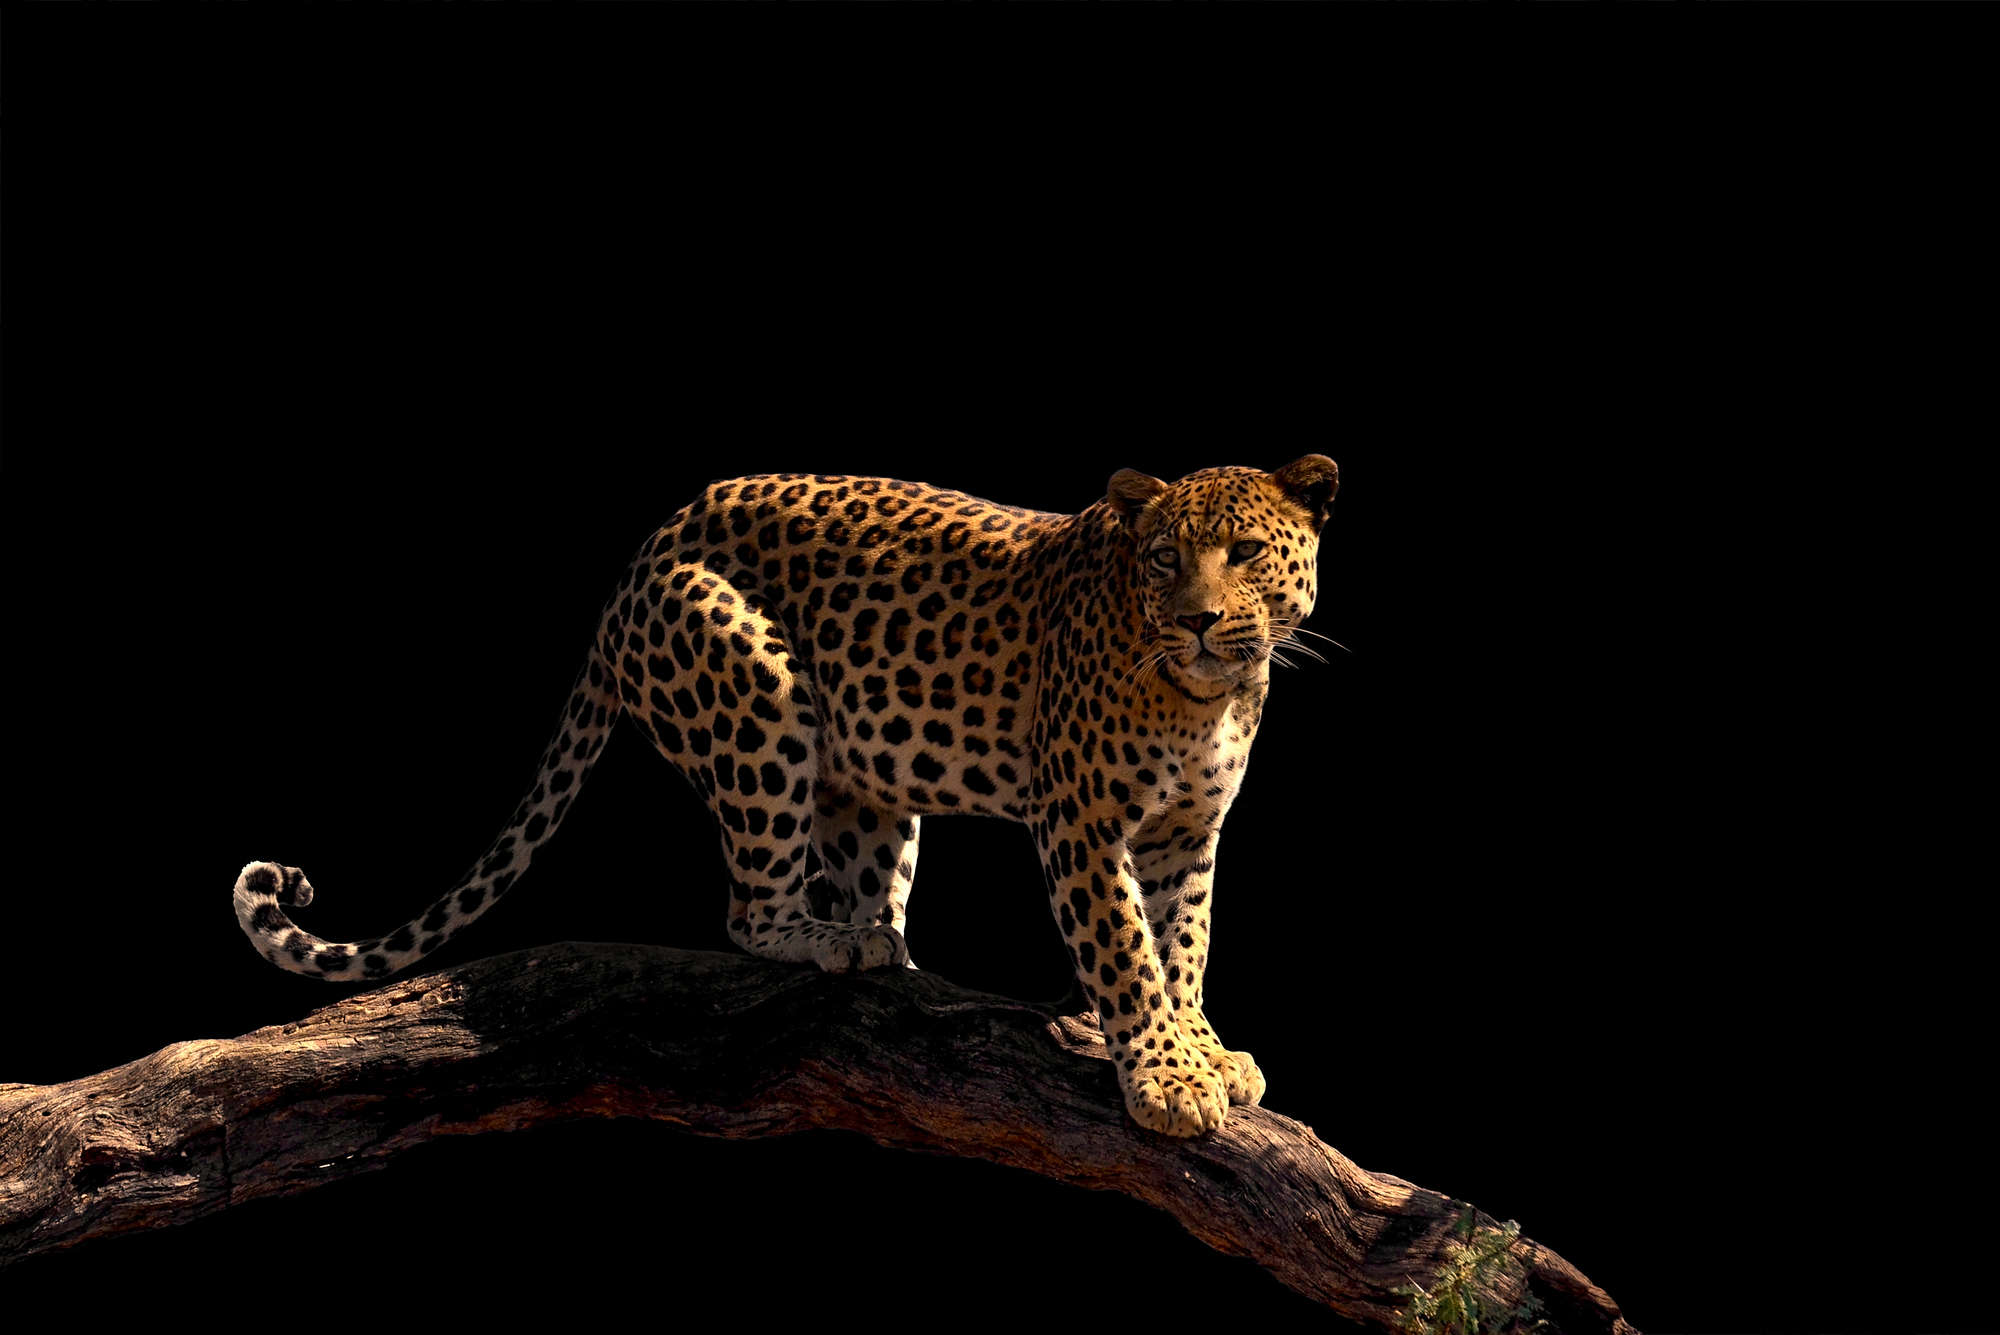             Papier peint panoramique léopard debout sur une branche sur intissé lisse nacré
        